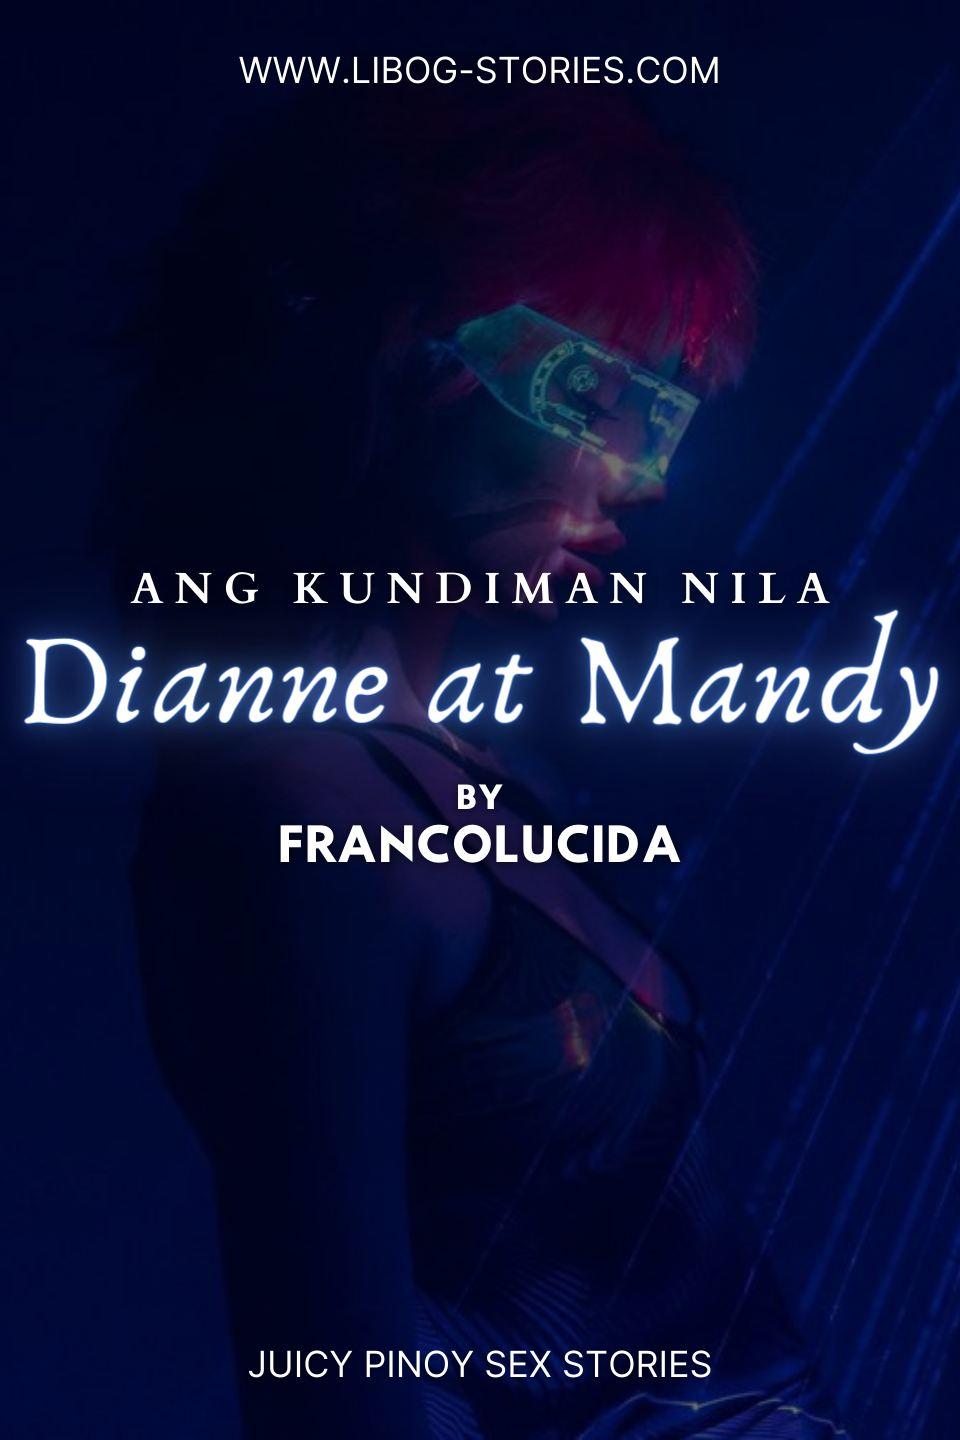 Ang Kundiman nila Dianne at Mandy